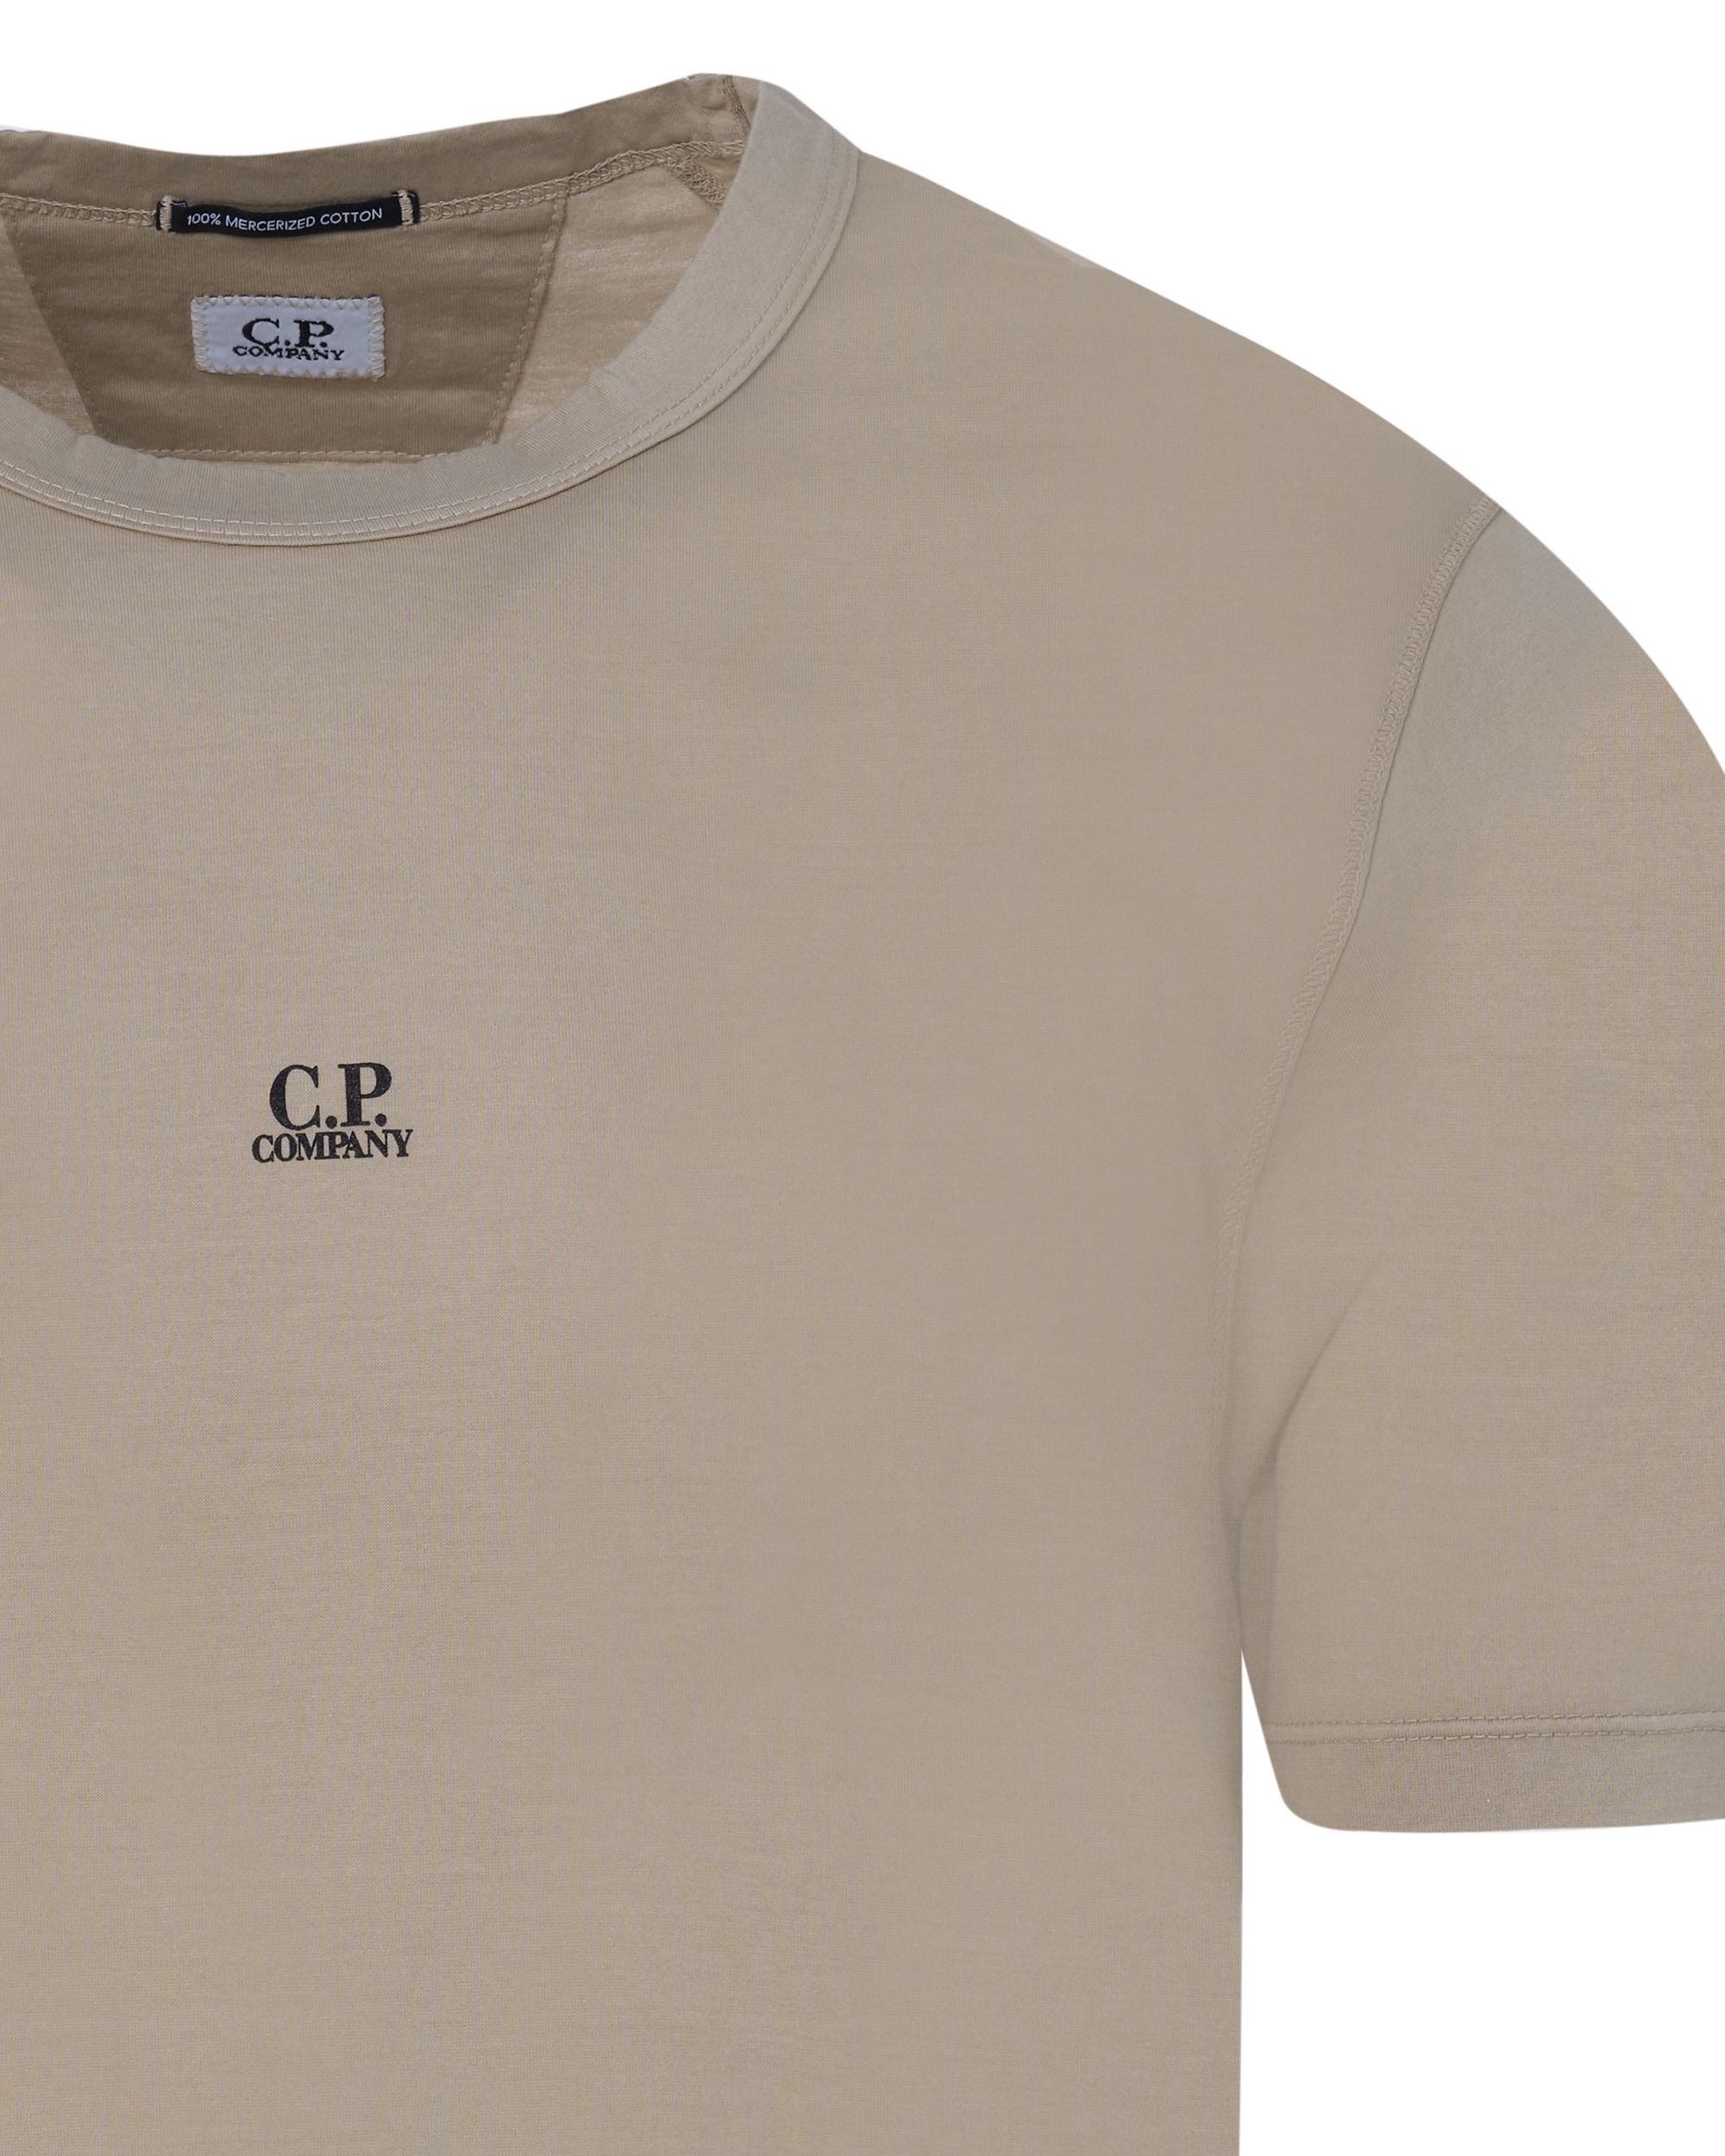 C.P Company T-shirt KM Khaki 082472-001-L